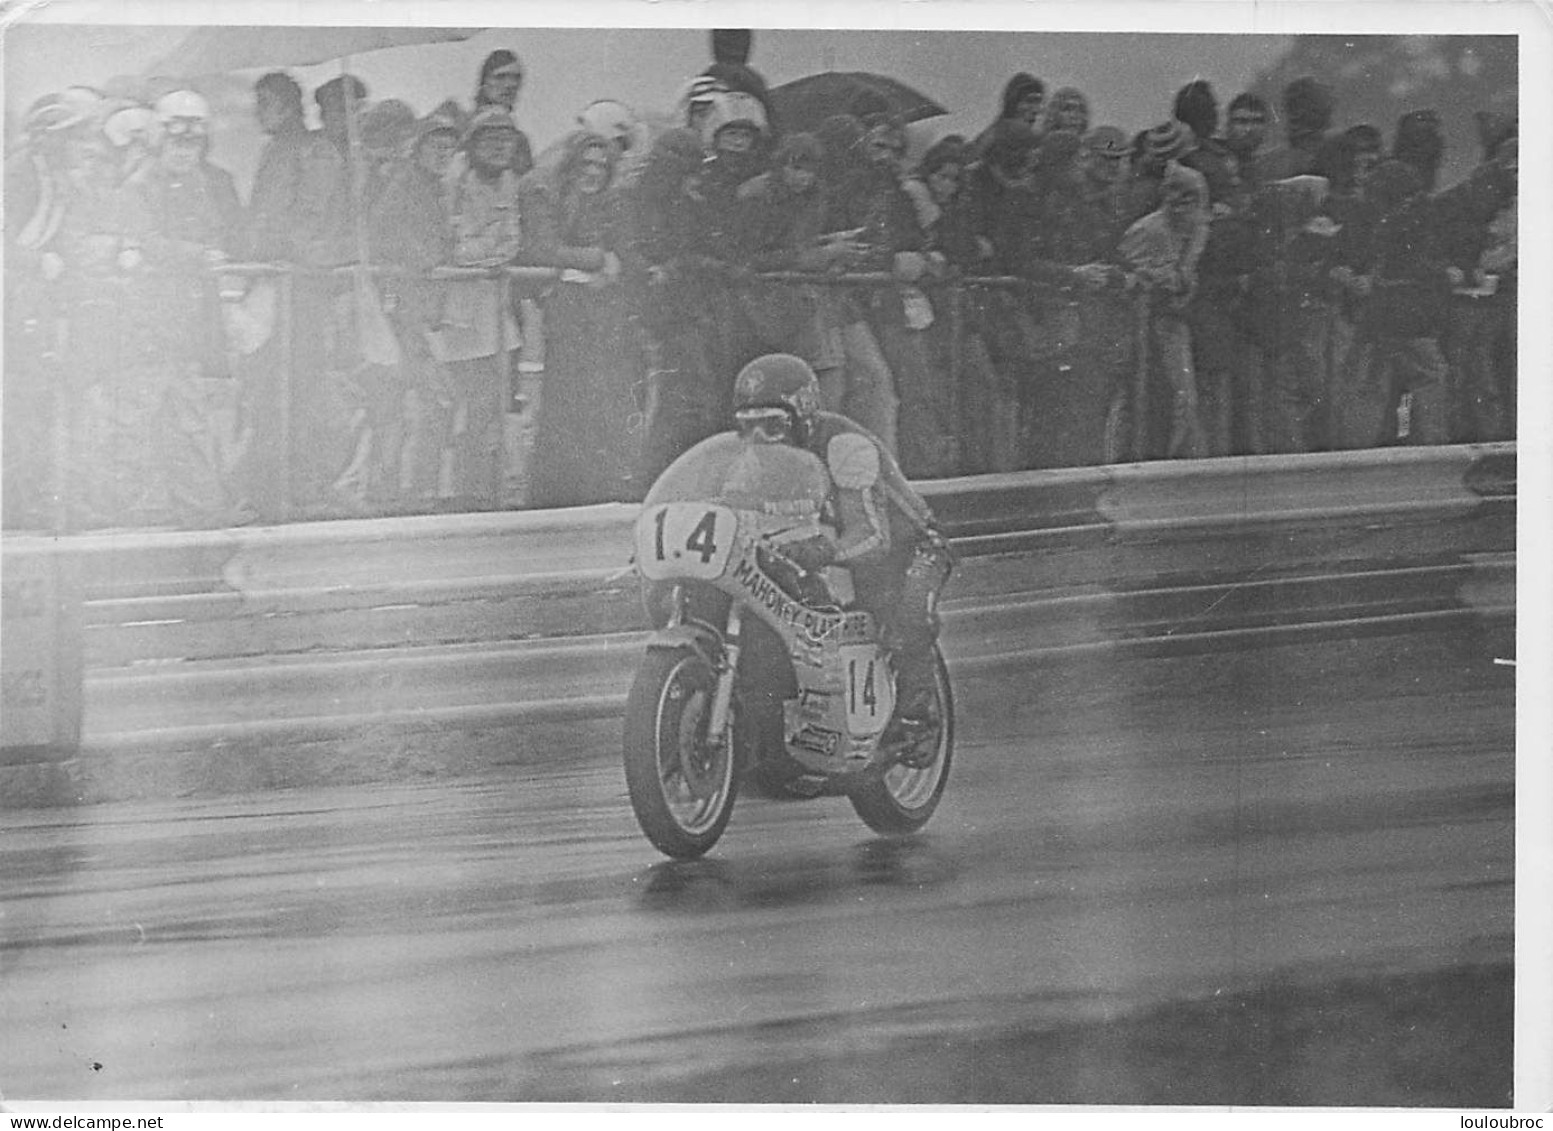 PILOTE MOTO PAT MAHONEY COURSE DE L'ANNEE 1974  RACE OF THE YEAR PHOTO DE PRESSE ORIGINALE 18X13CM - Sports